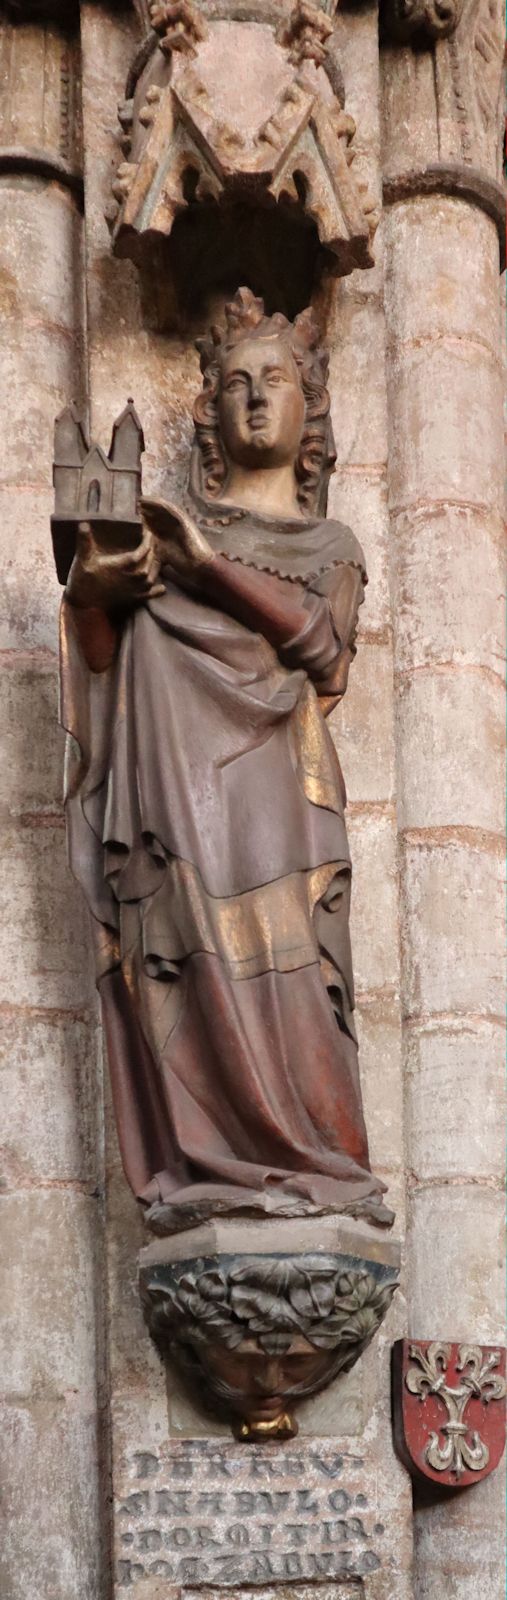 Statue in der Sebalduskirche in Nürnberg